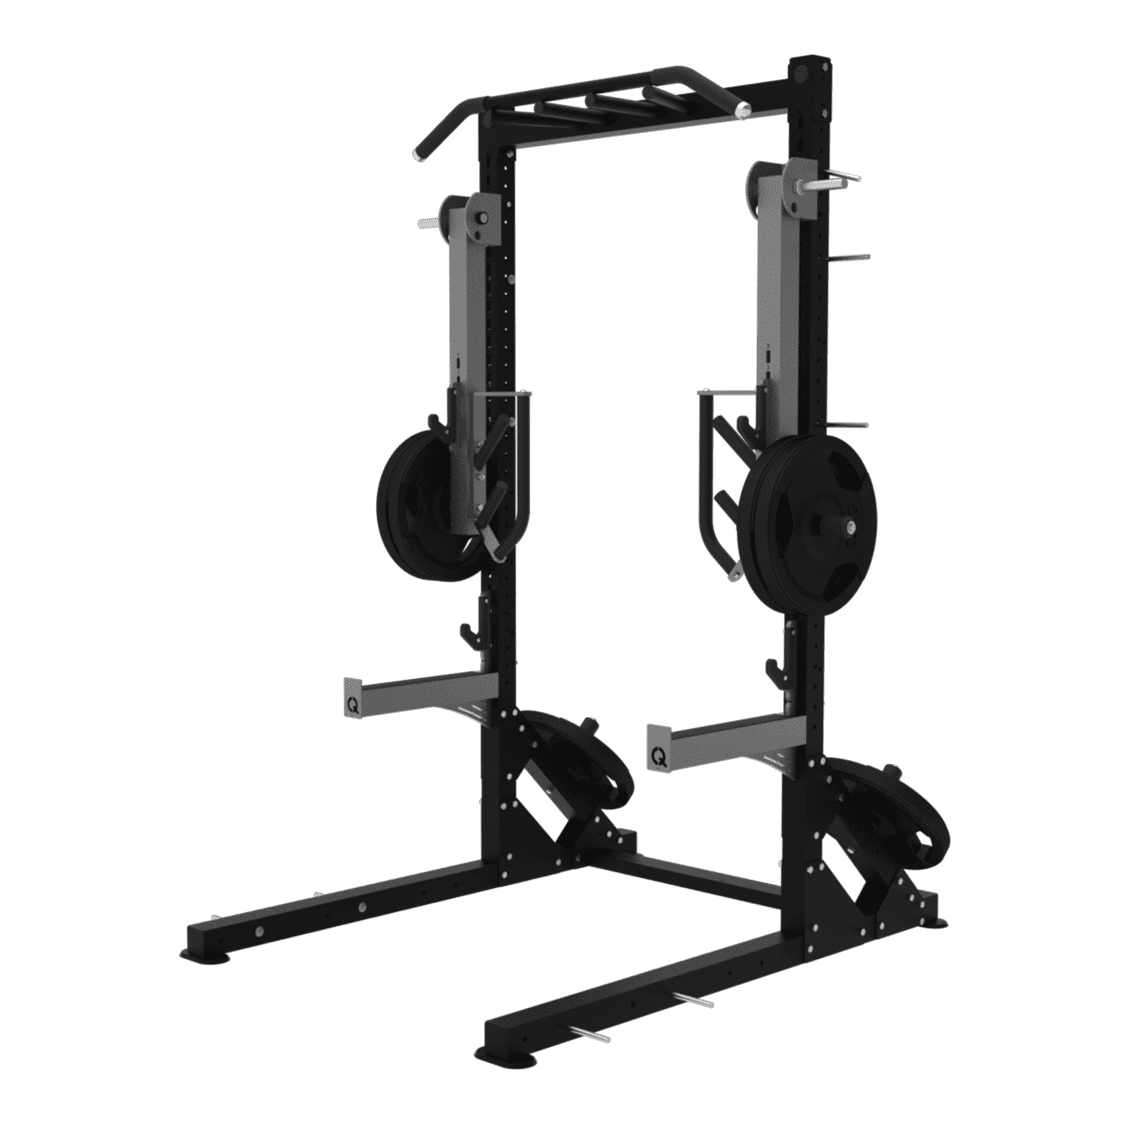 En promo/TIGUAR barre de musculation power gym, poids musculation 18kg –  Pharmunix